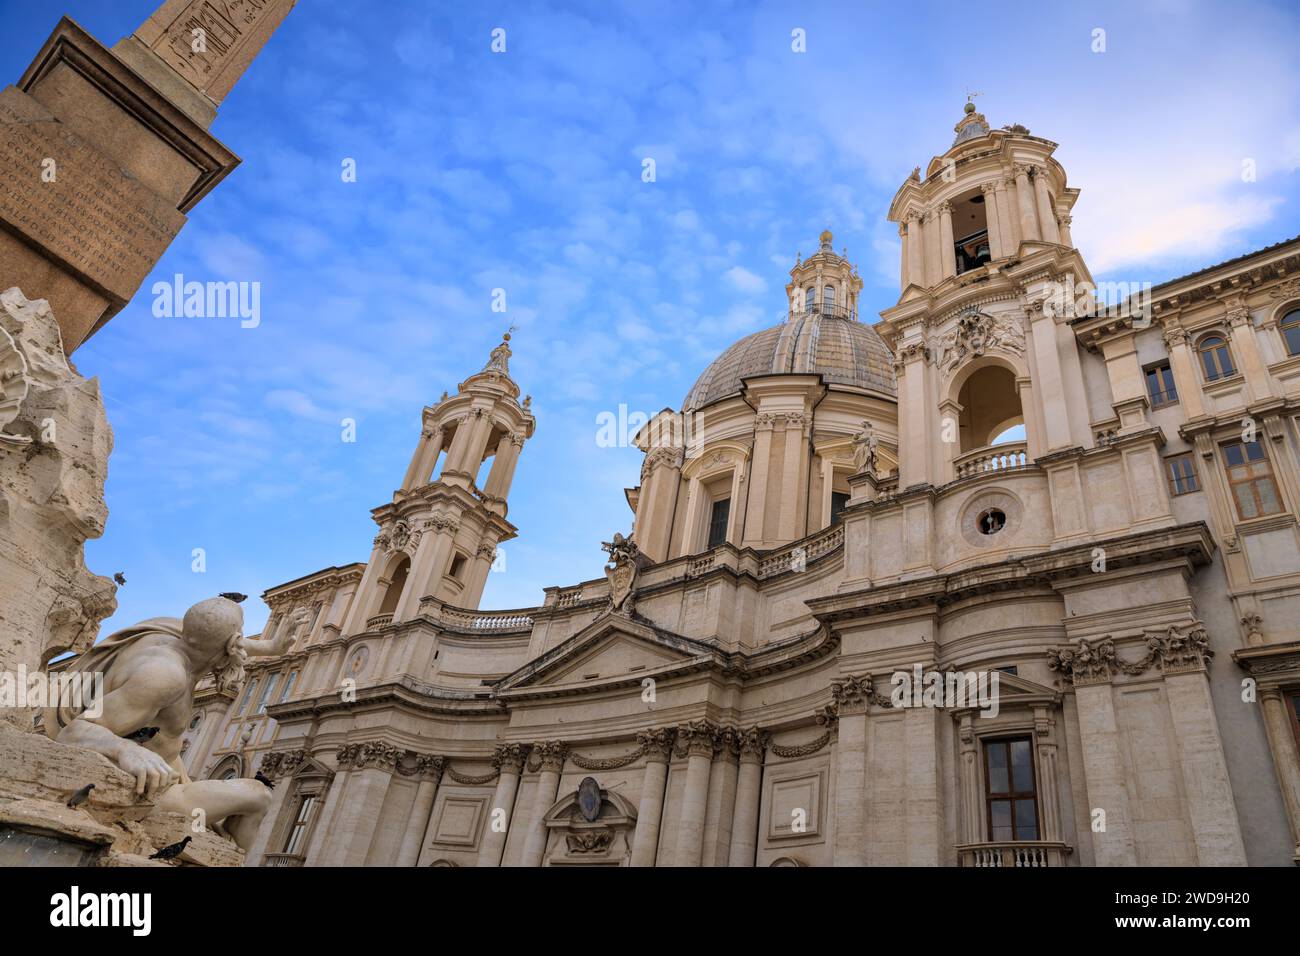 Façade de Sant'Agnese in Agone, église baroque sur la place Navona à Rome, Italie. Banque D'Images